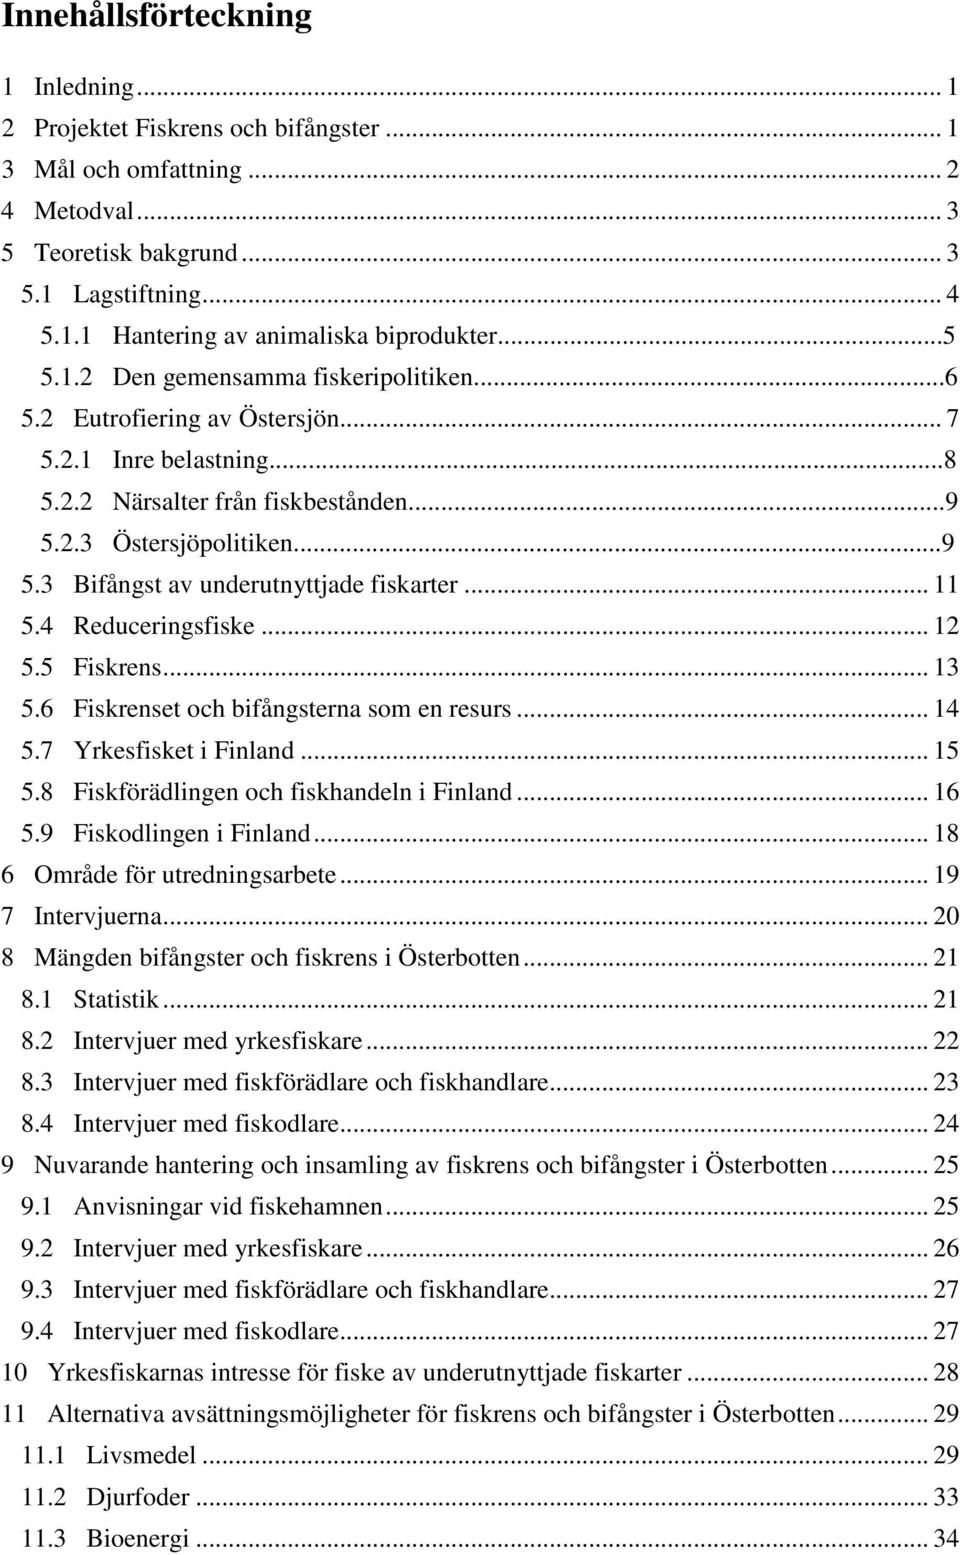 .. 11 5.4 Reduceringsfiske... 12 5.5 Fiskrens... 13 5.6 Fiskrenset och bifångsterna som en resurs... 14 5.7 Yrkesfisket i Finland... 15 5.8 Fiskförädlingen och fiskhandeln i Finland... 16 5.